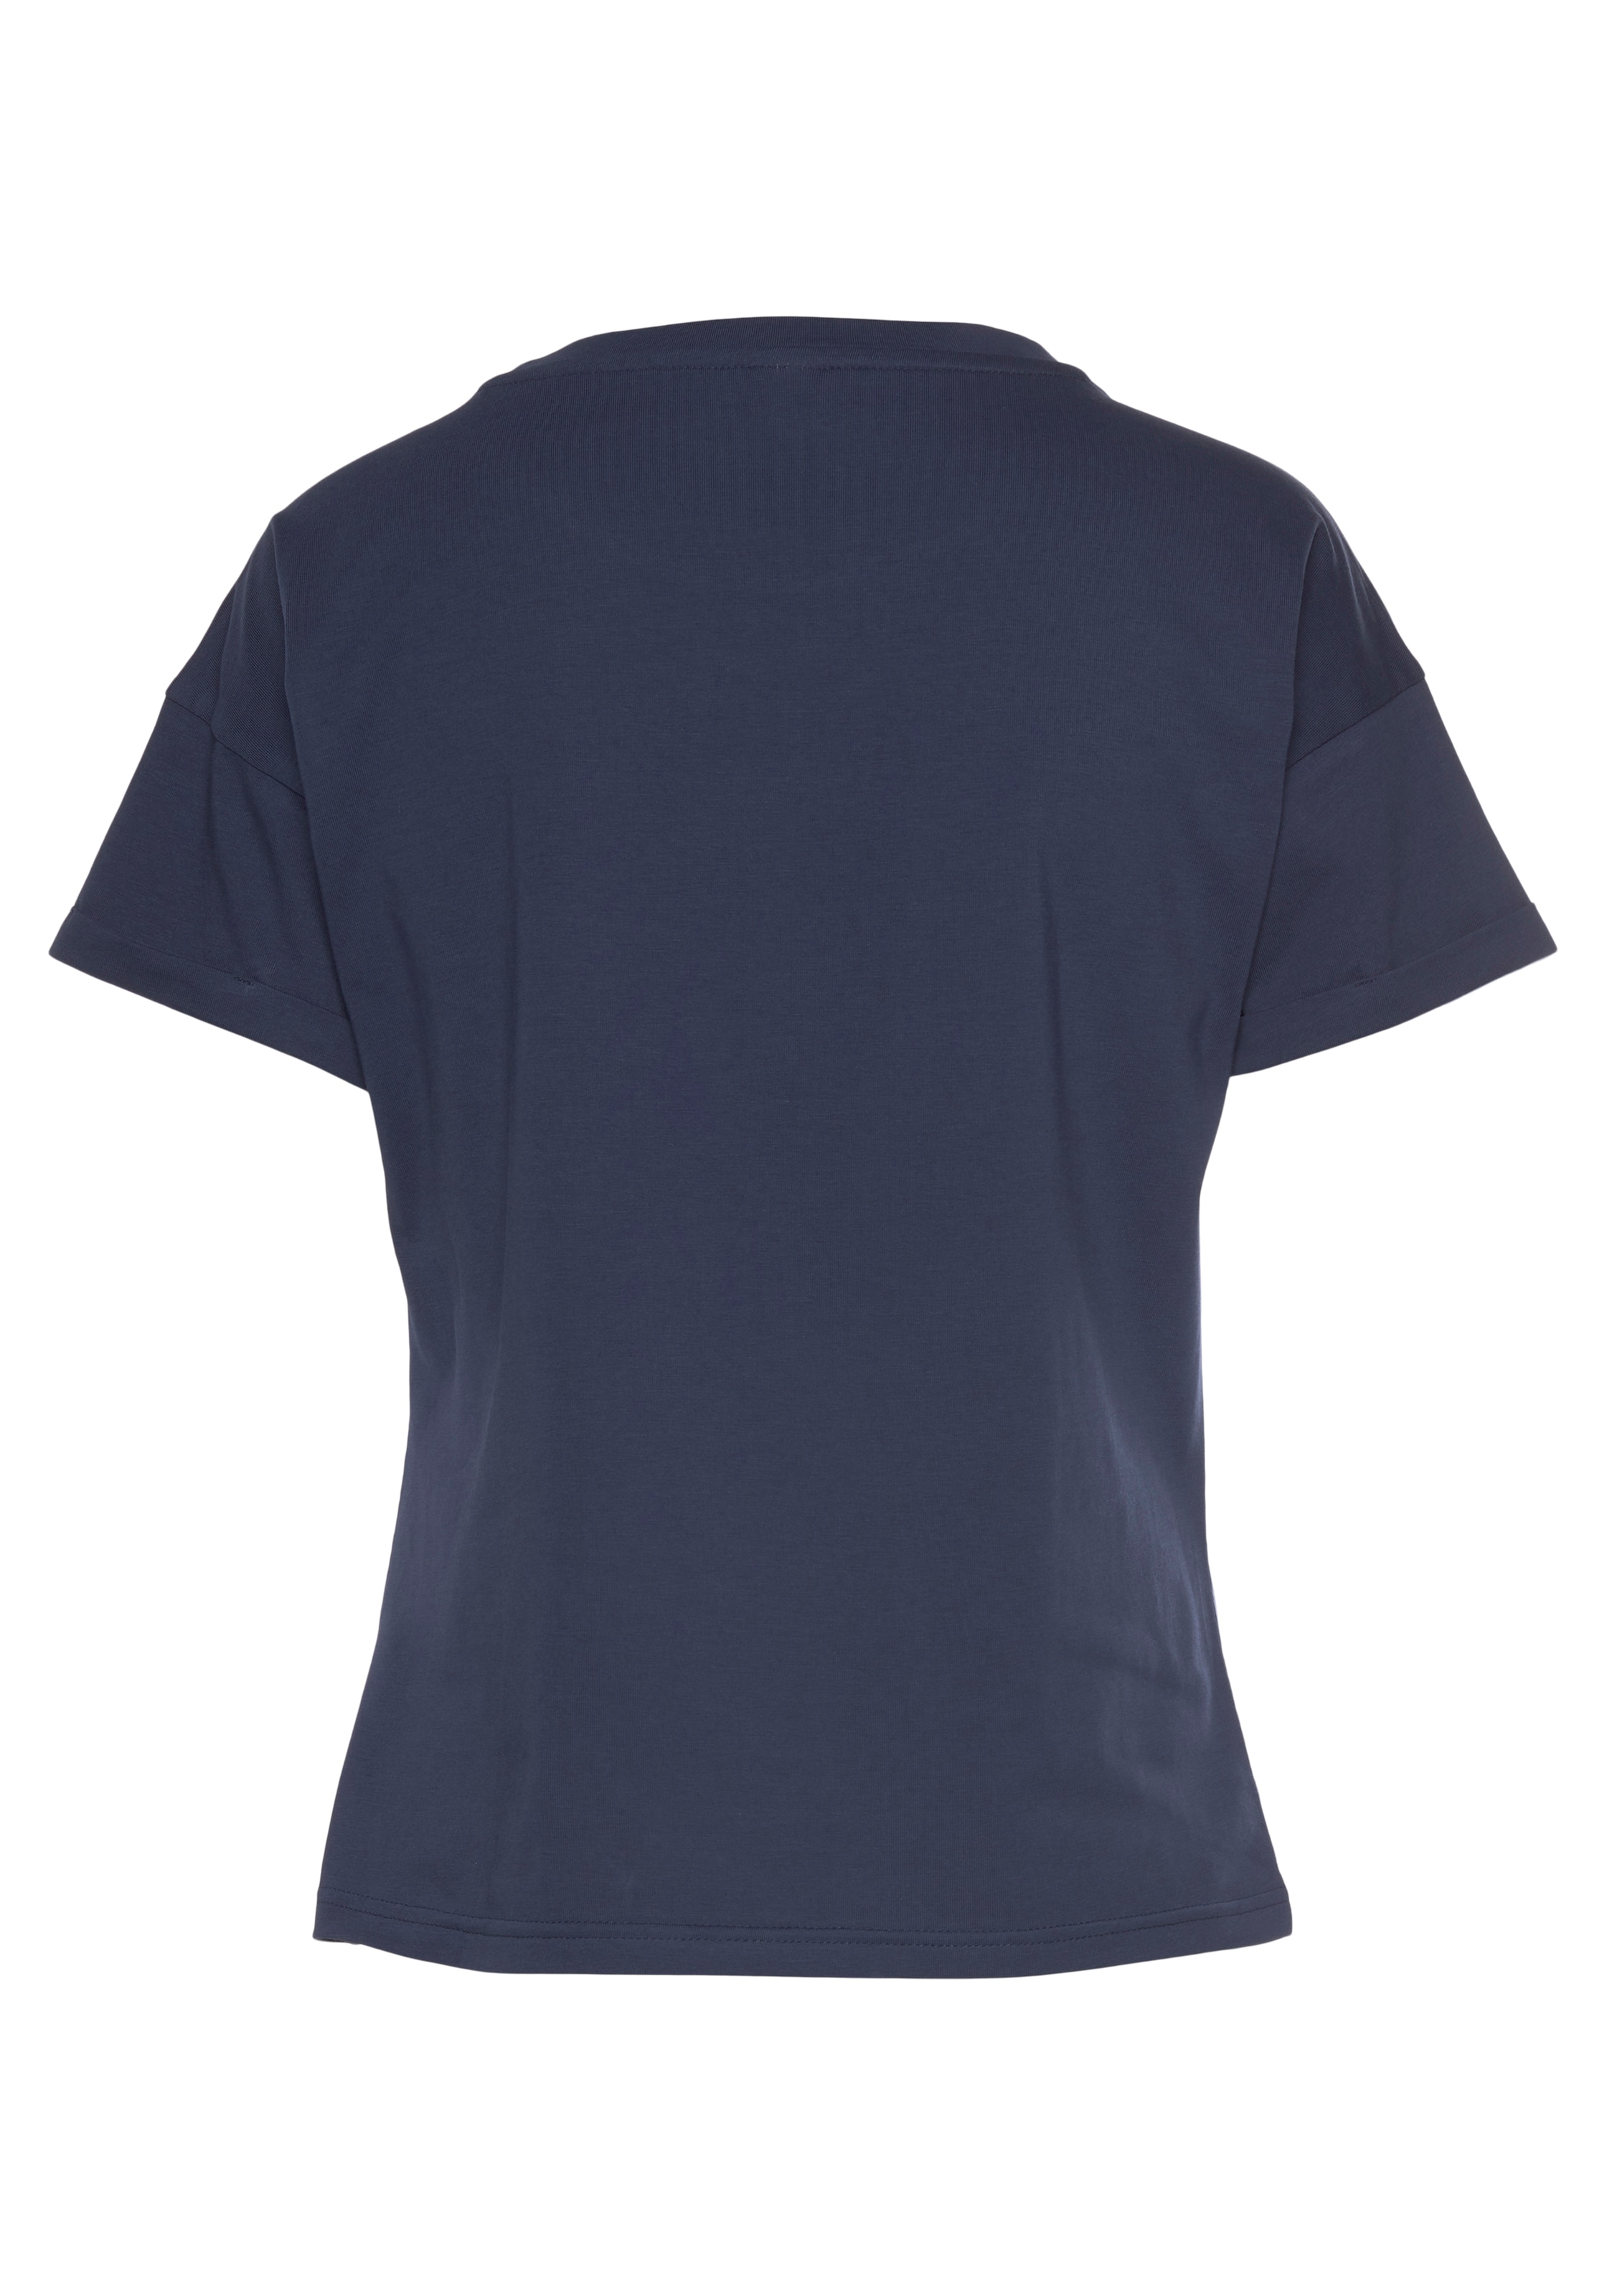 kaufen Online im OTTO Shop T-Shirt, maritimen H.I.S im Stil